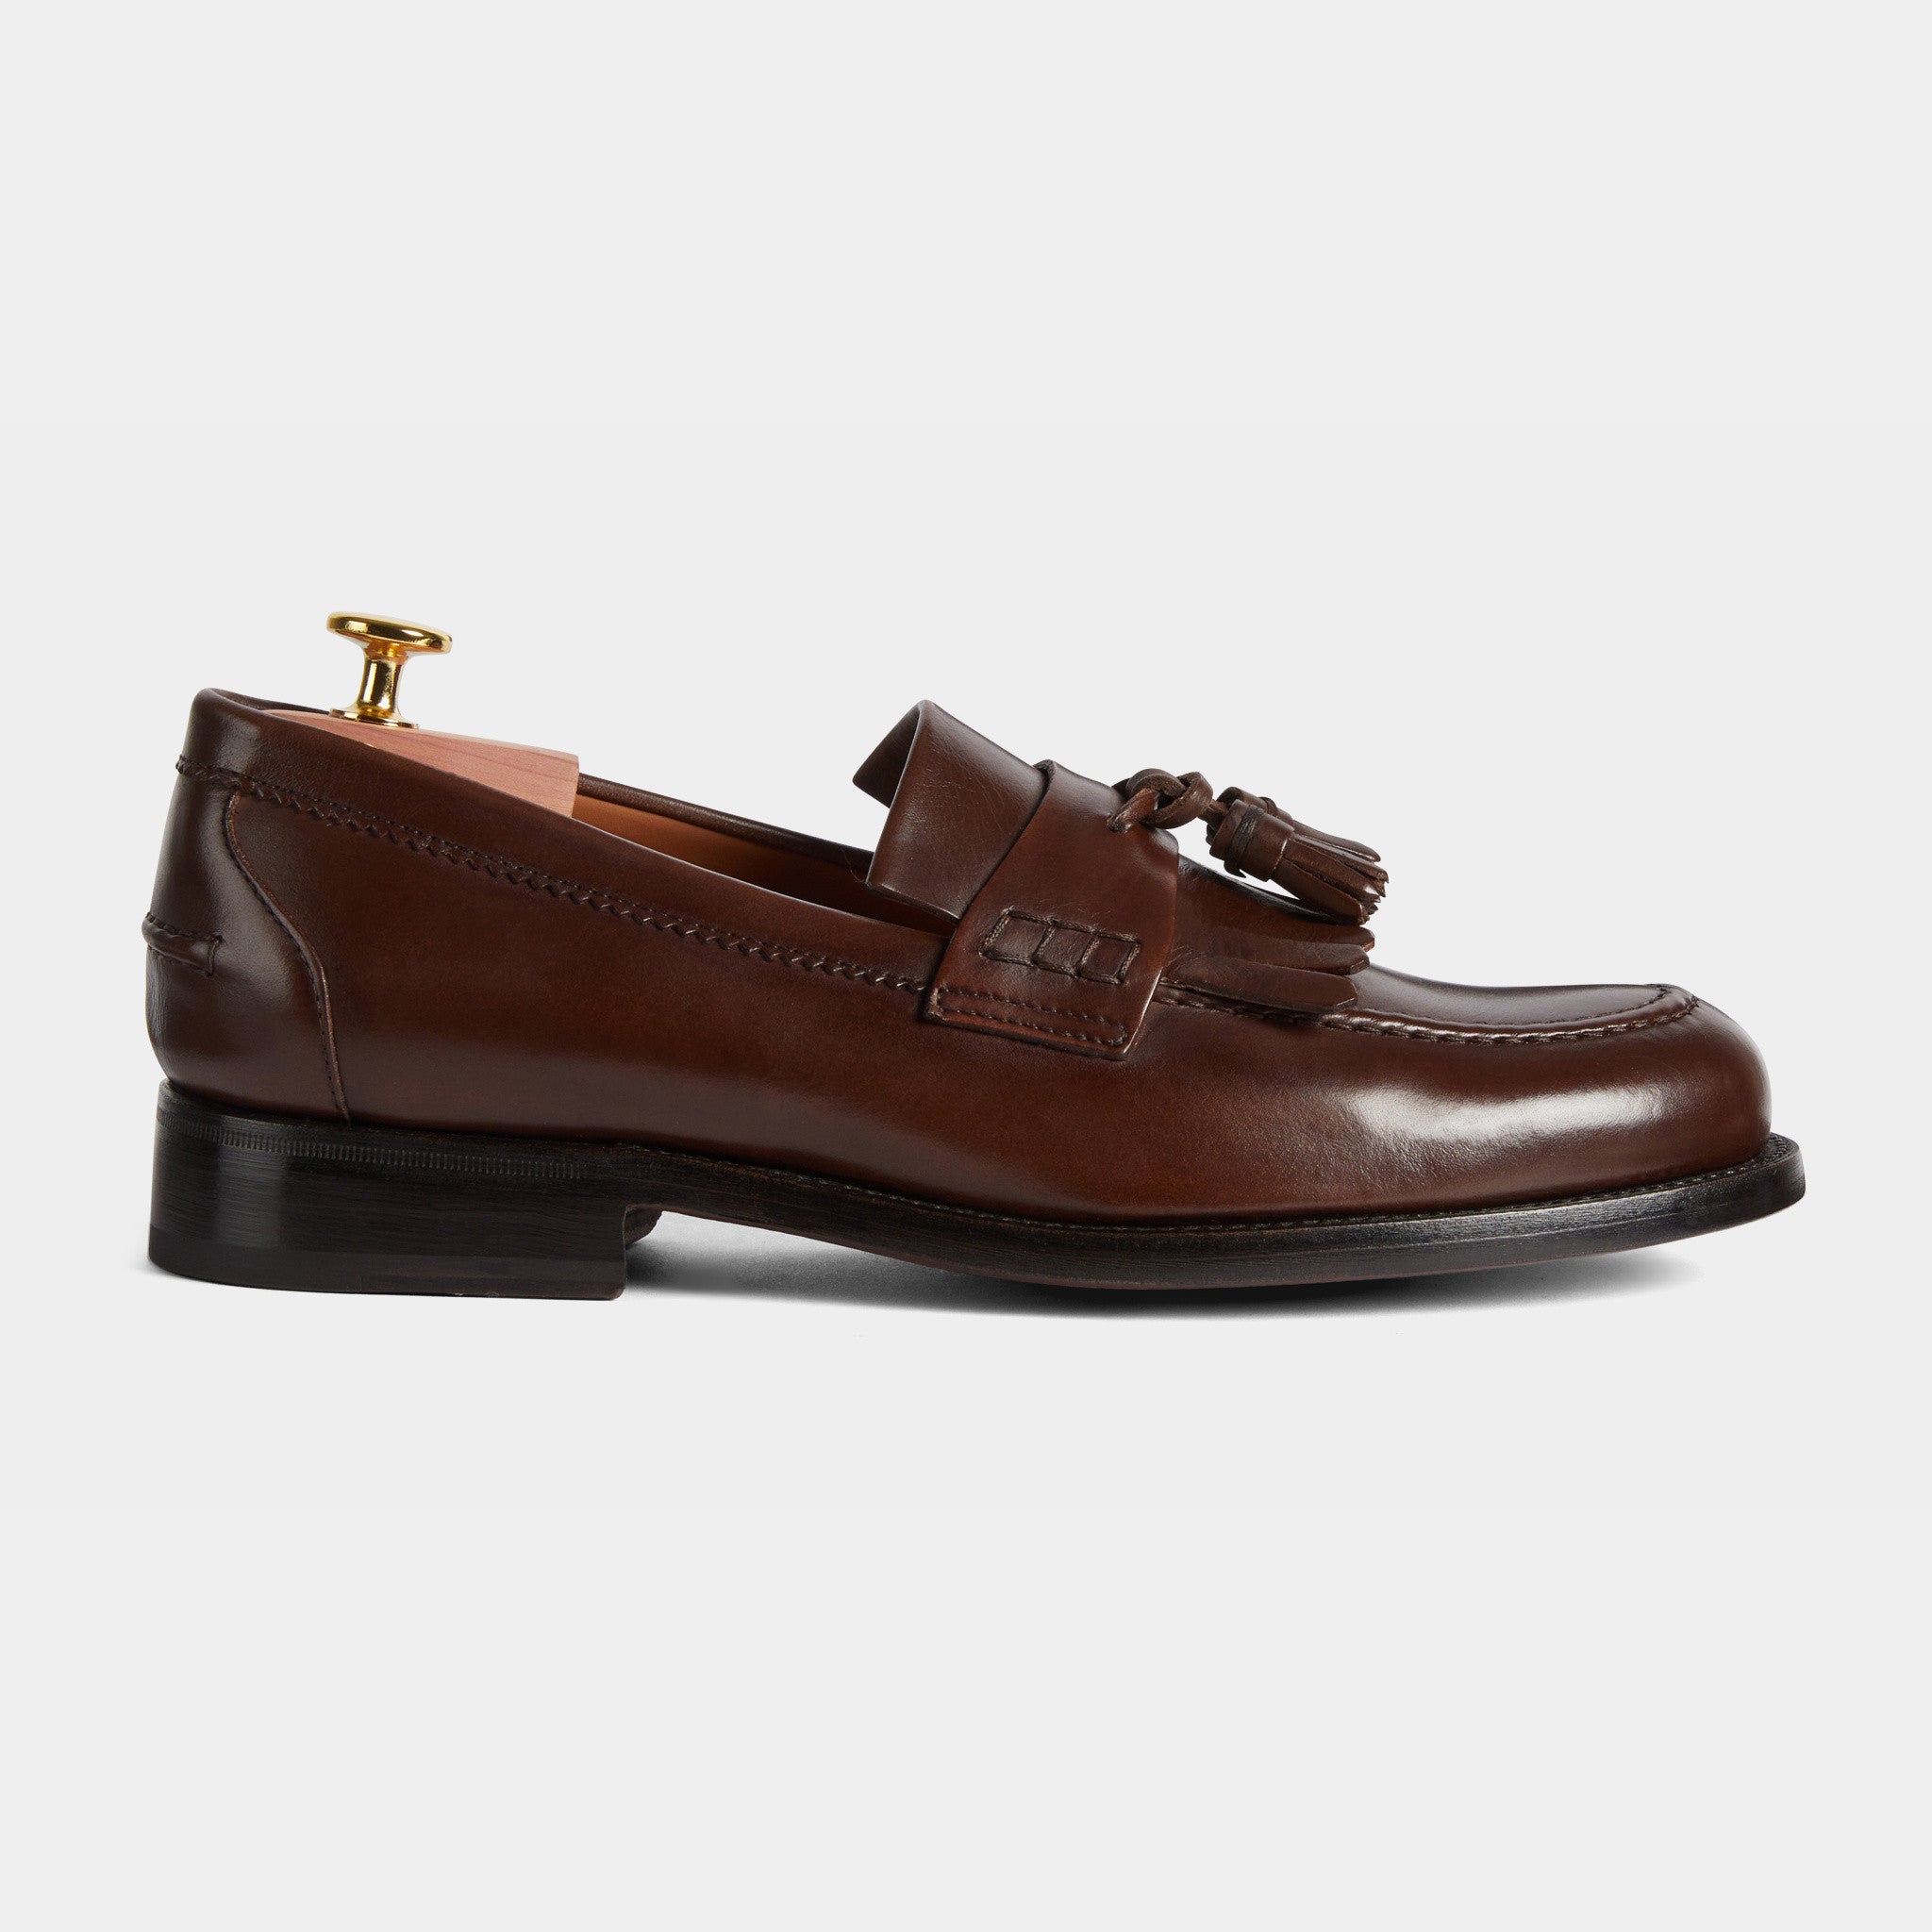 Men's brown leather Penny Loafers & Fringe | Velasca